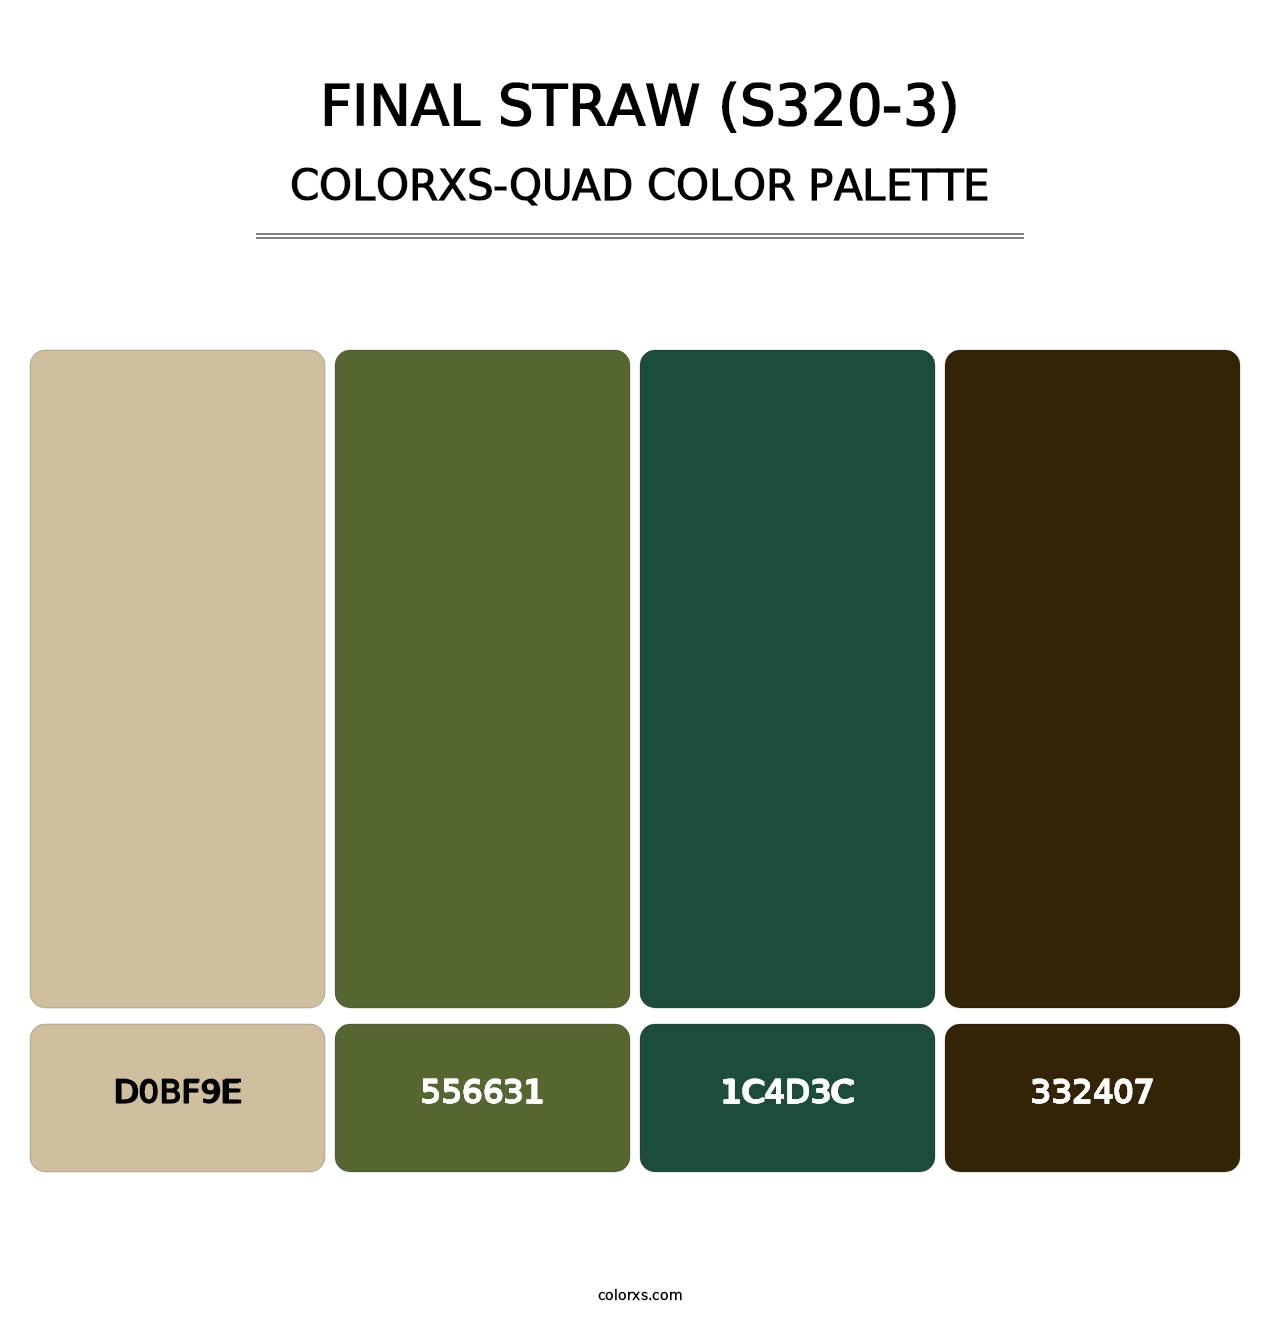 Final Straw (S320-3) - Colorxs Quad Palette